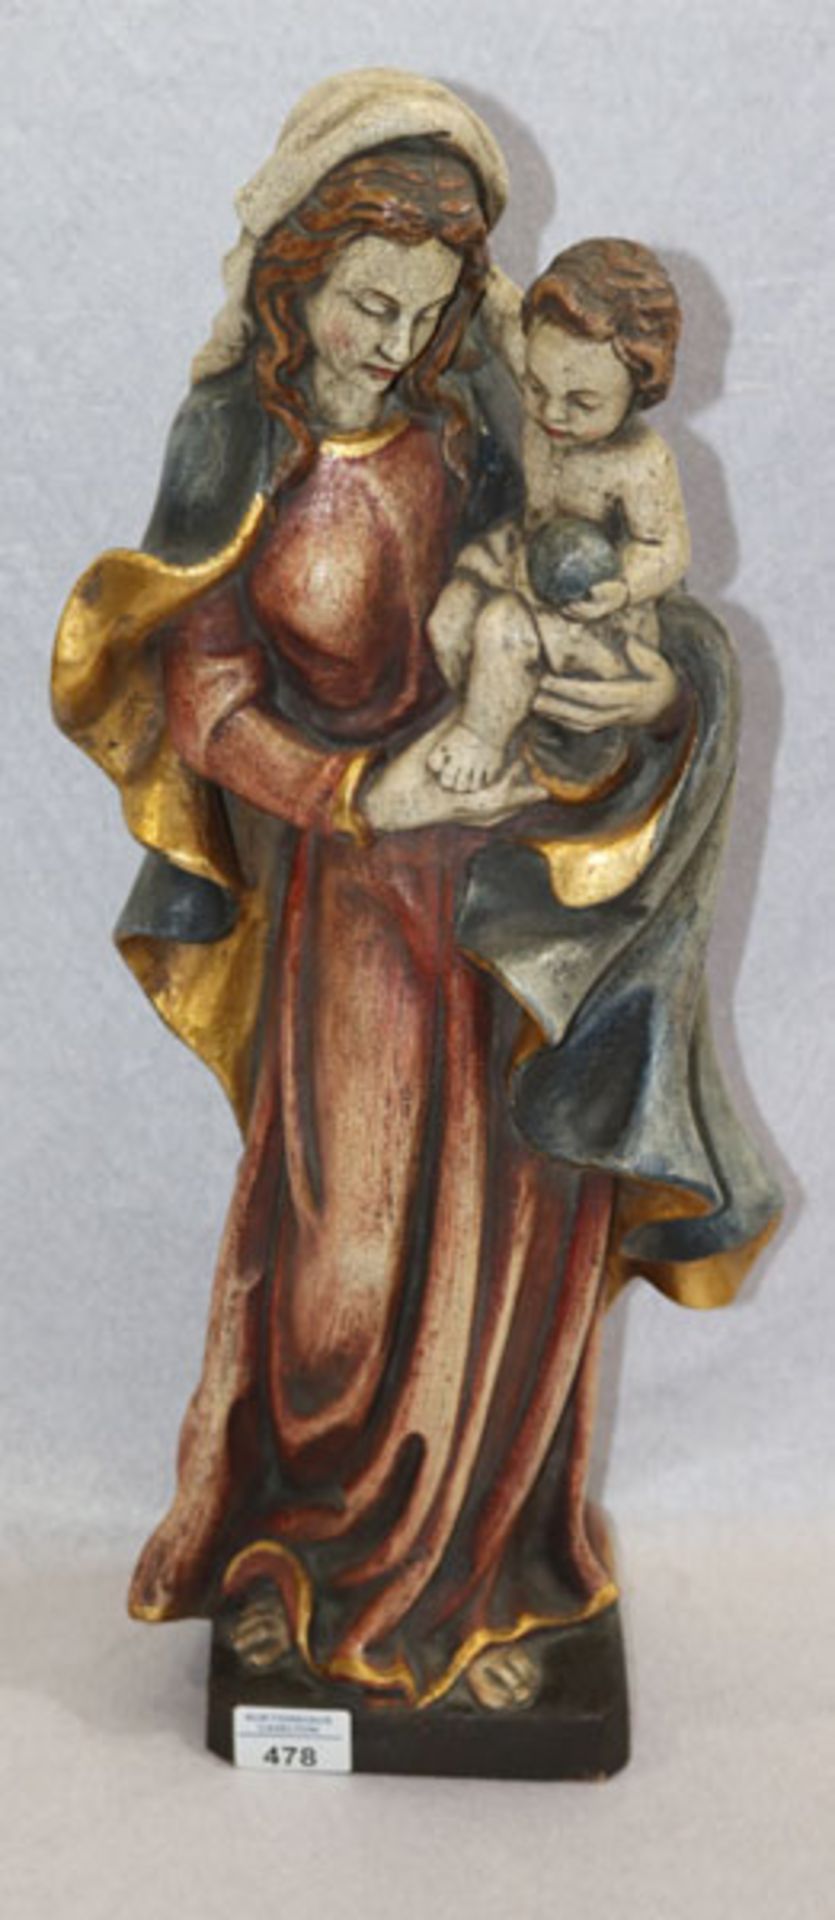 Holz Figurenskulptur 'Maria mit Kind', farbig gefaßt, H 55 cm